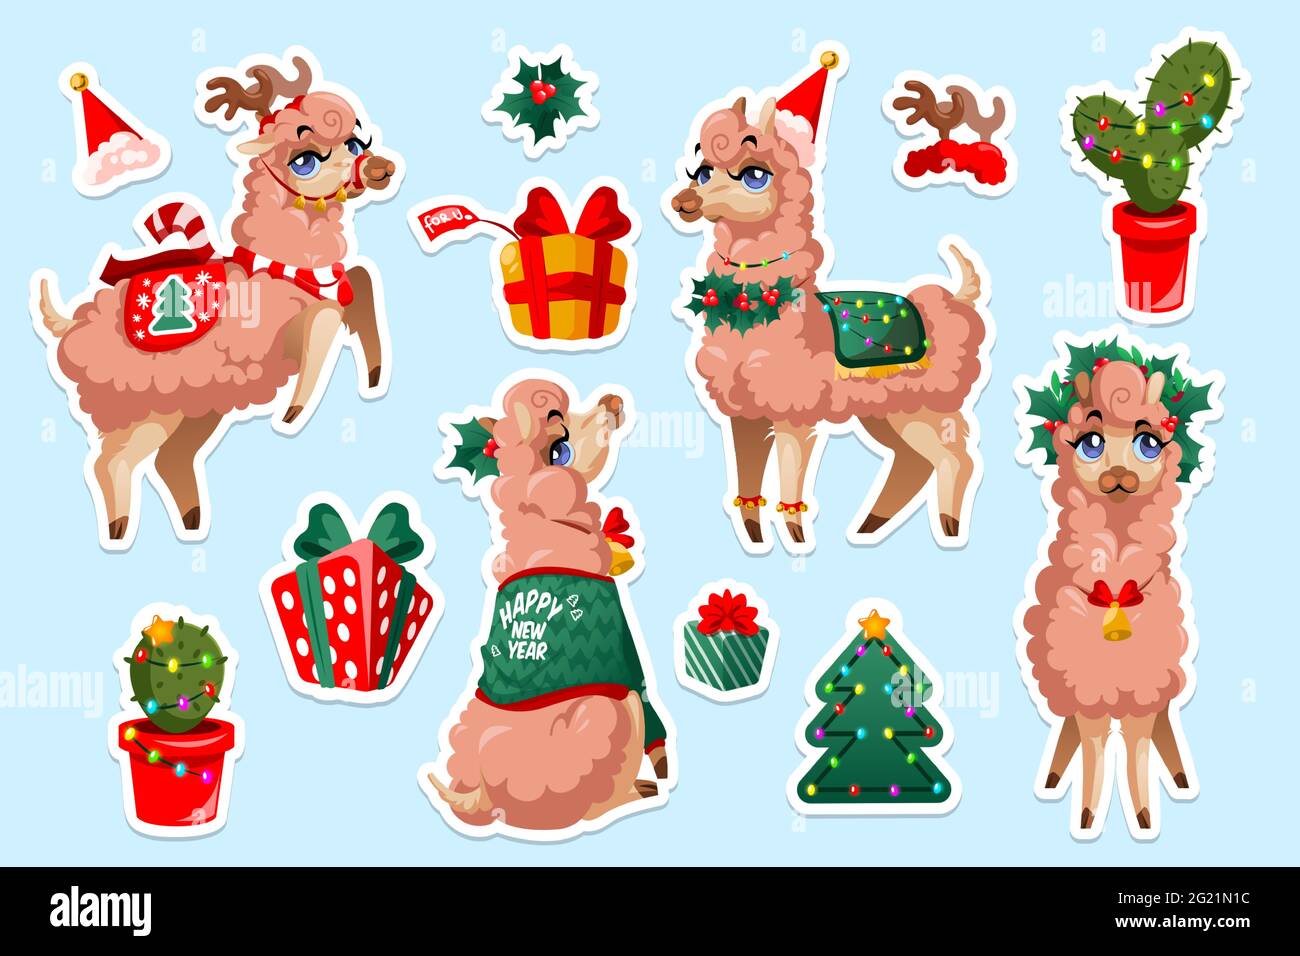 Juego de pegatinas con Llama de Año Nuevo, vicuna perú animal. Personaje de dibujos animados de alpaca de Navidad. La mascota de Lama mexicano con cara linda lleva ropa festiva de Navidad, guirnalda y caja de regalo con parches aislados Ilustración del Vector